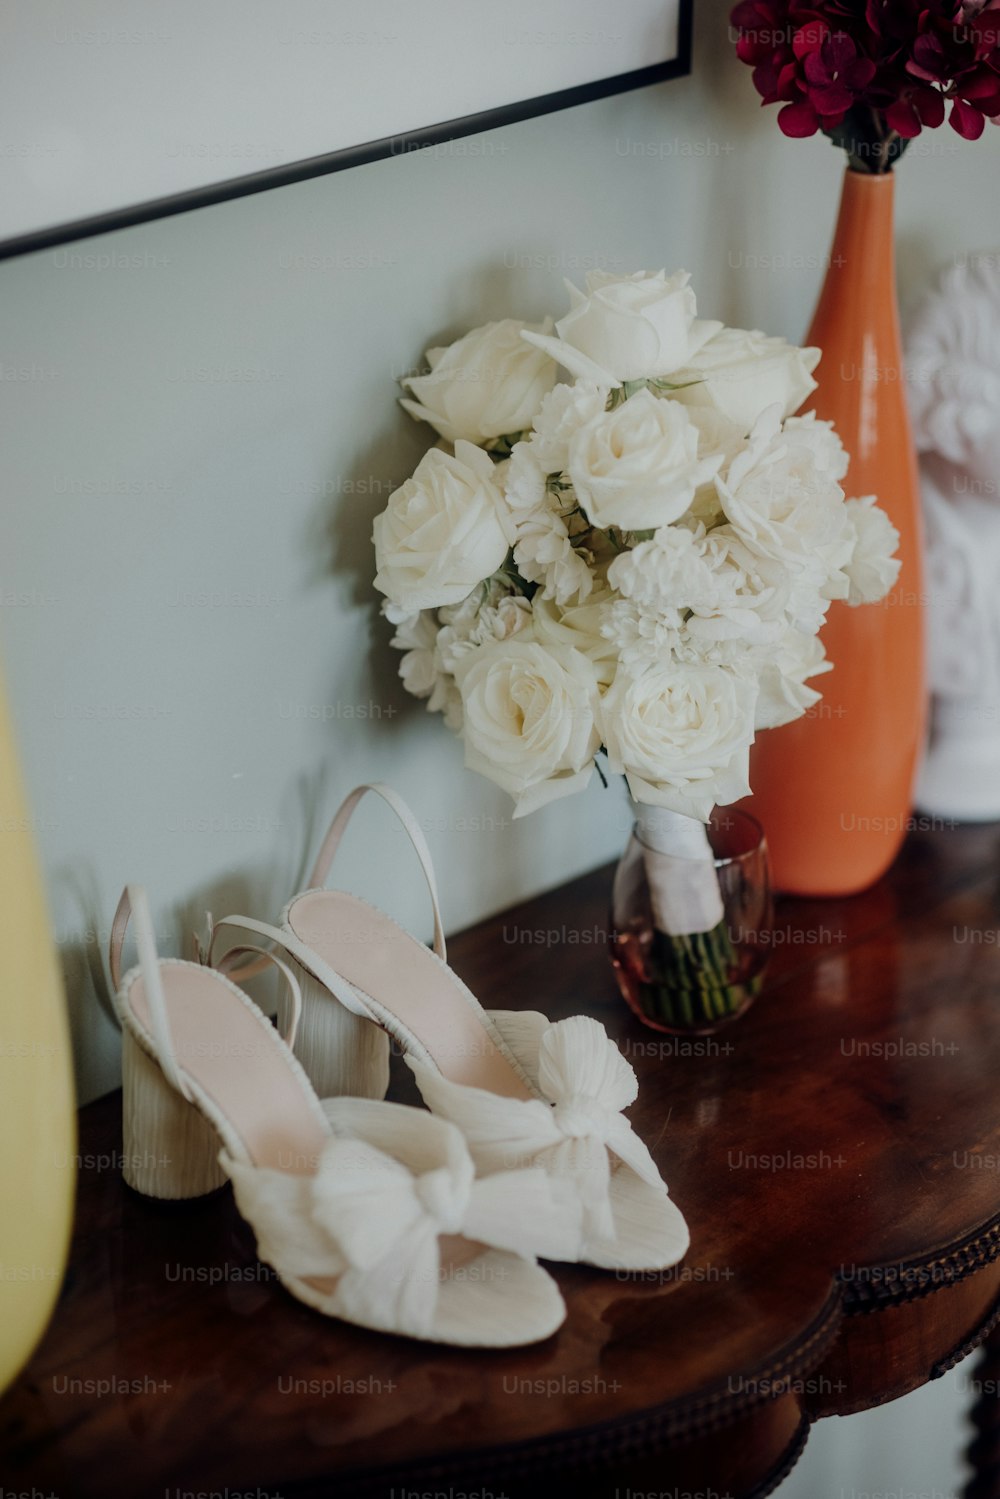 um par de sapatos brancos sentados em uma mesa ao lado de um vaso de flores